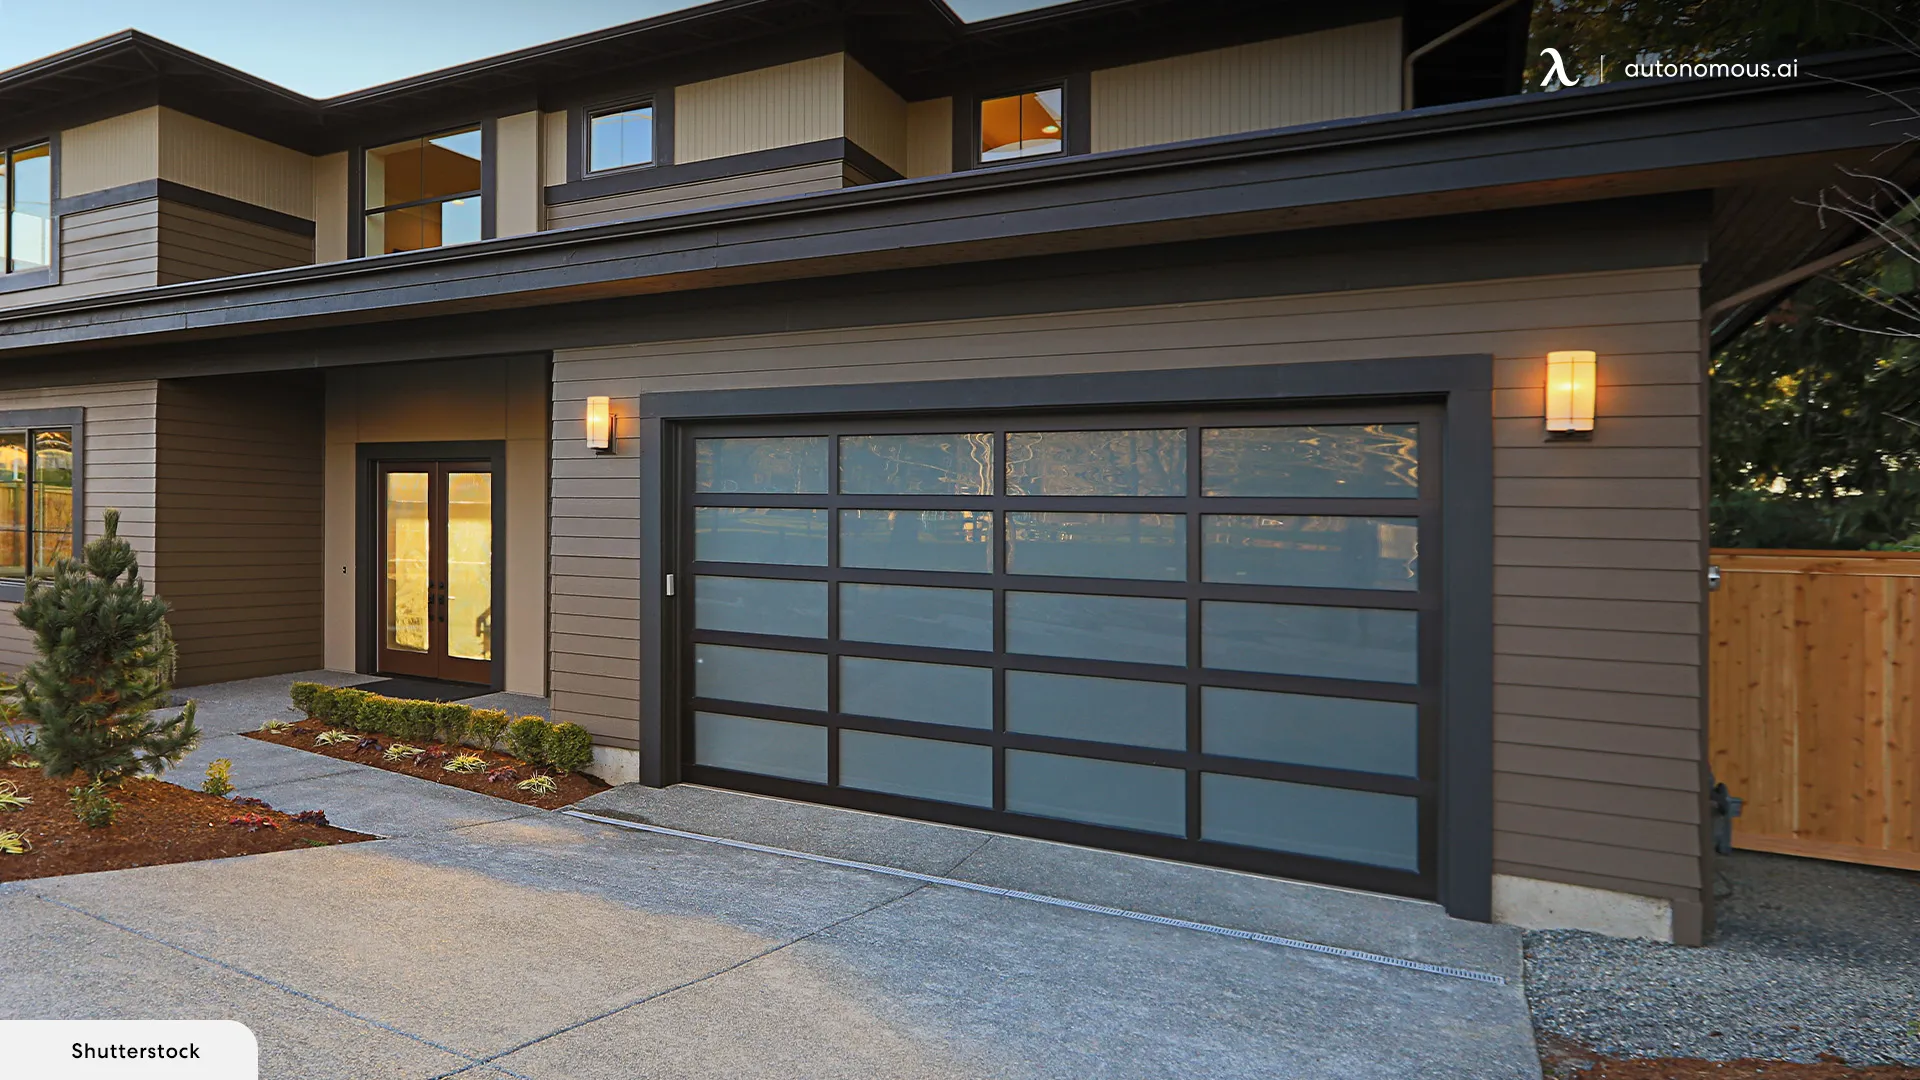 Garage Door - cheapest way to convert garage to living space